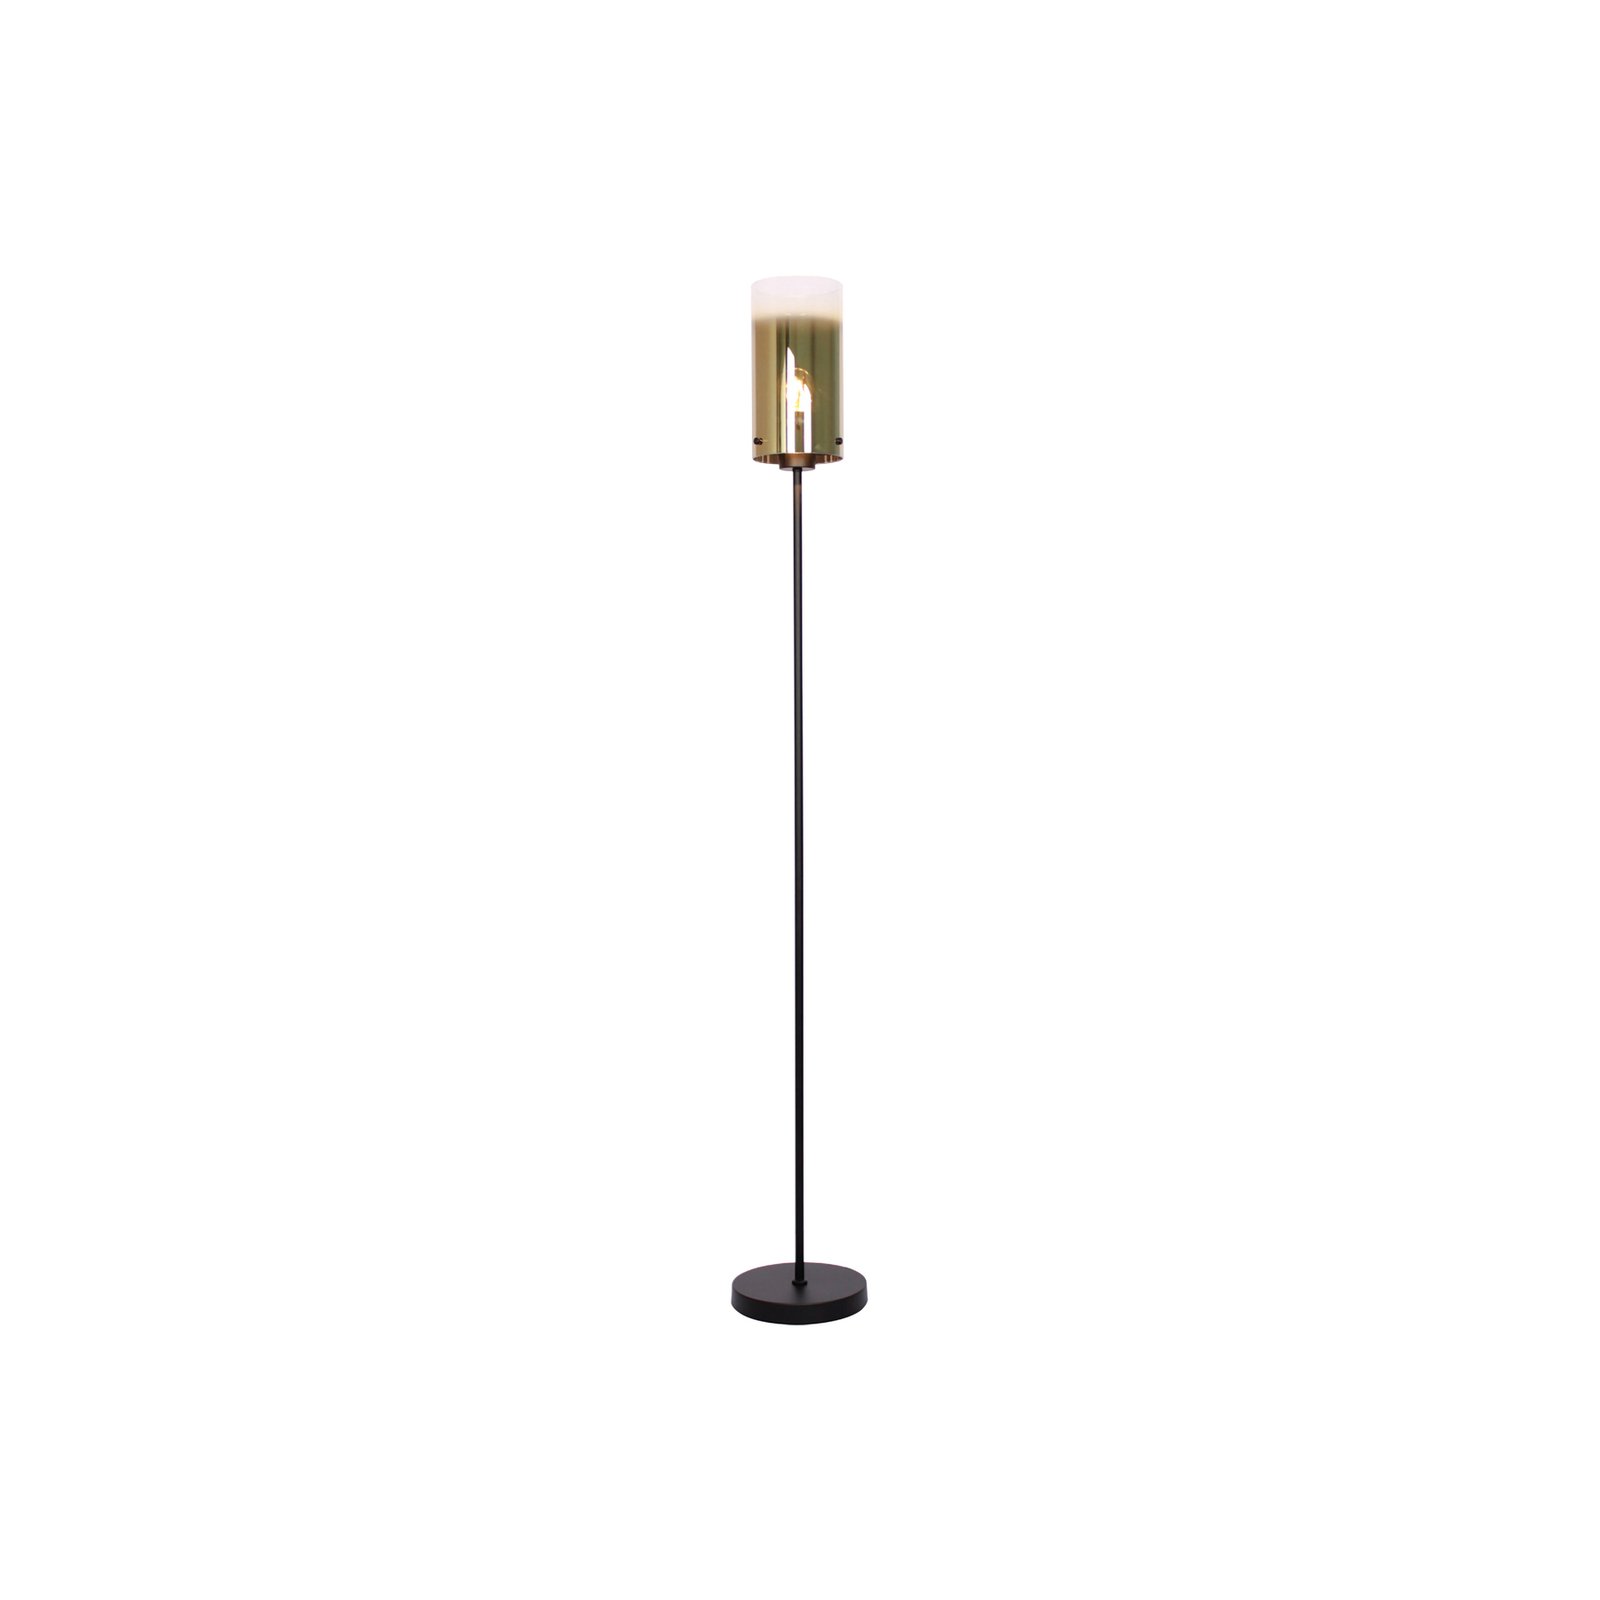 Stojací lampa Ventotto, černá/zlatá, výška 165 cm, kov/sklo